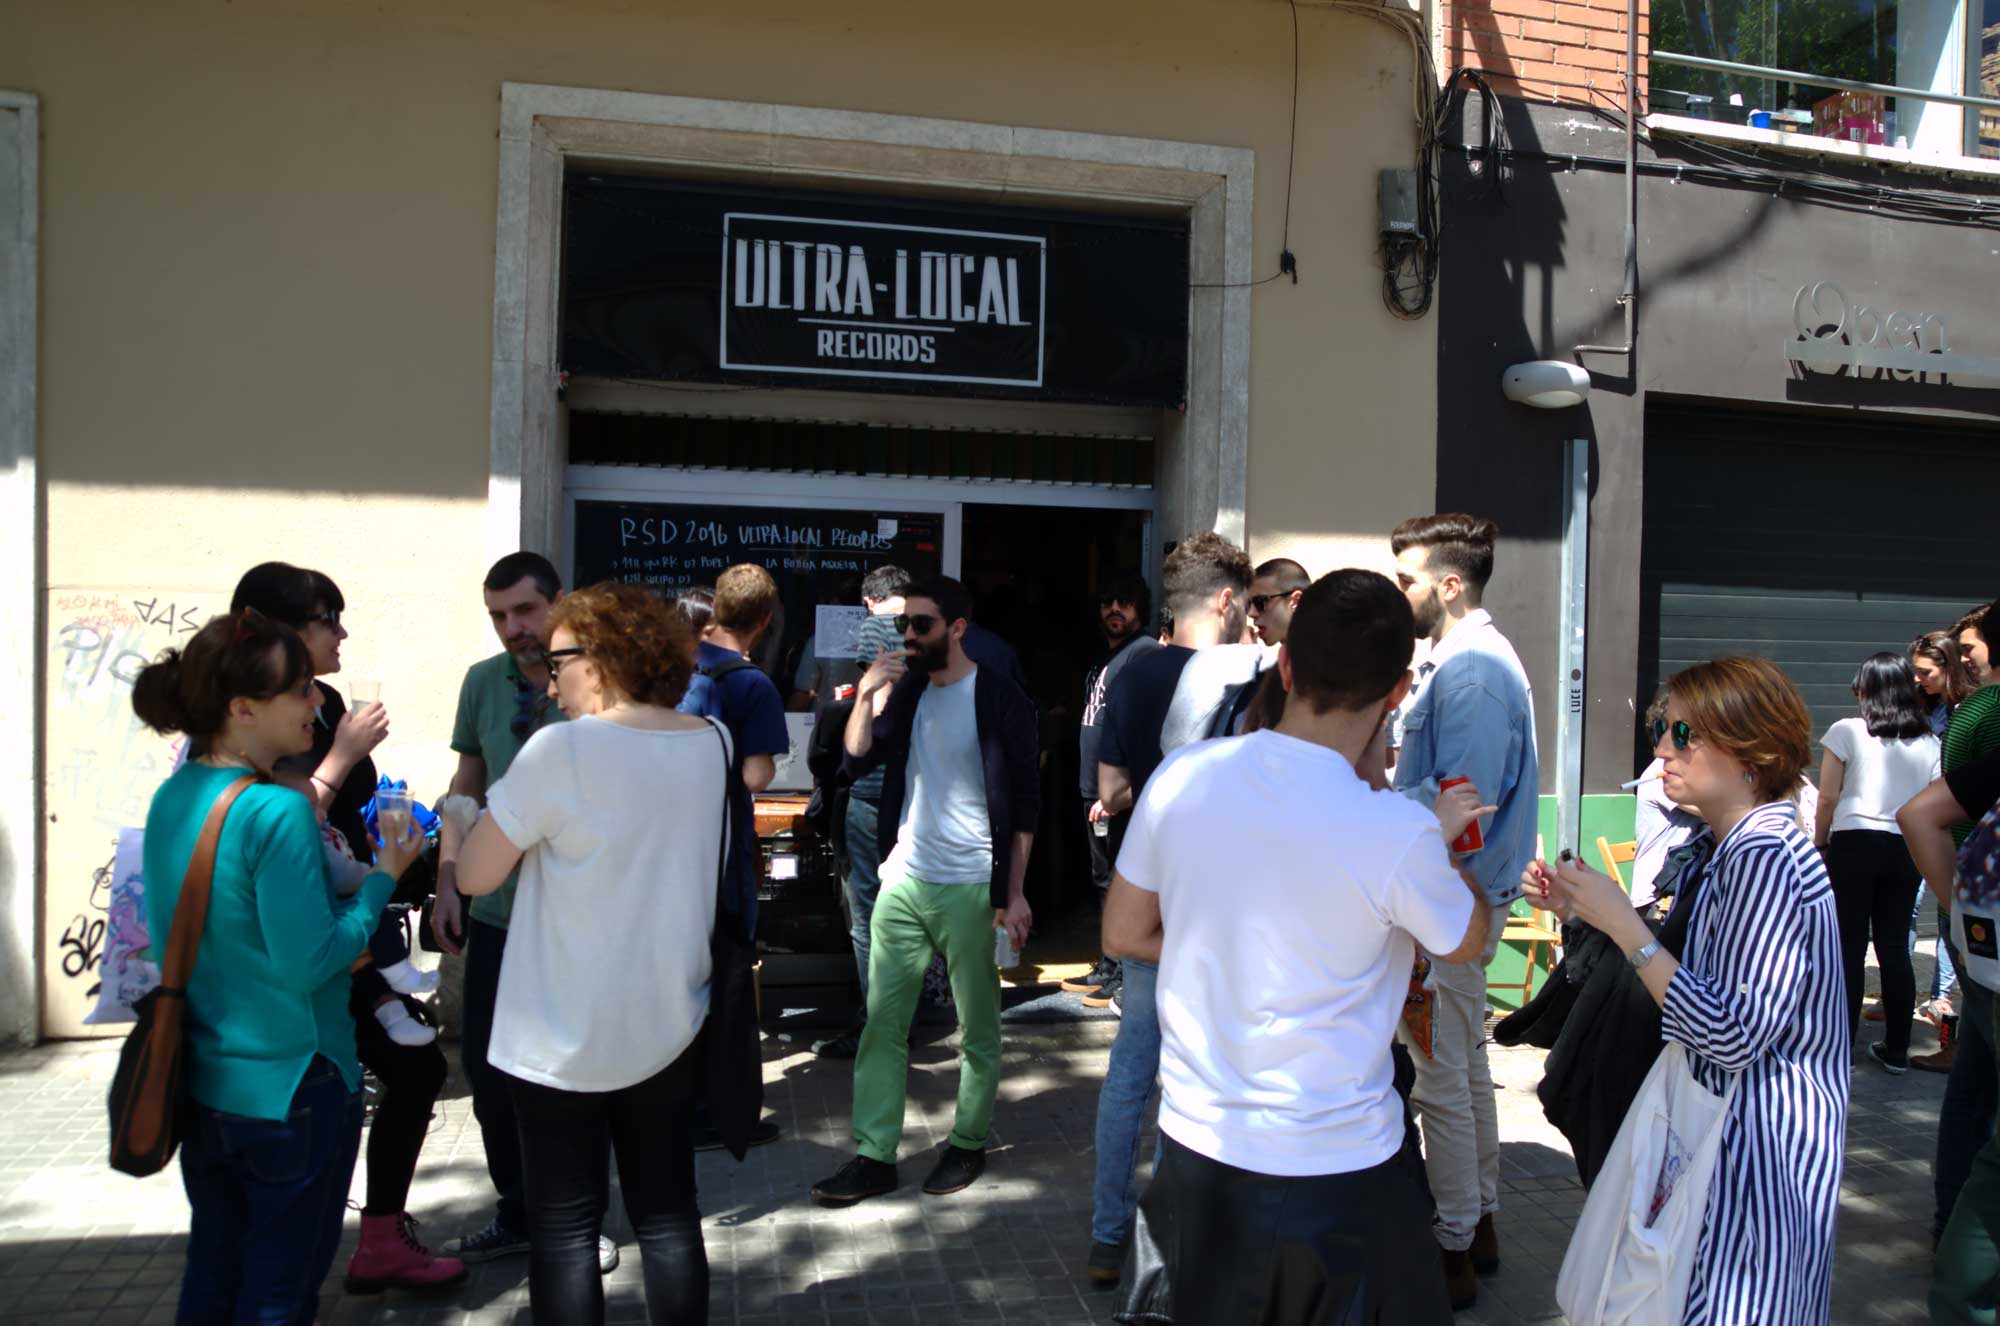  Botiga Ultra-Local Records del Poblenou durant el Record Store Day 2016. 